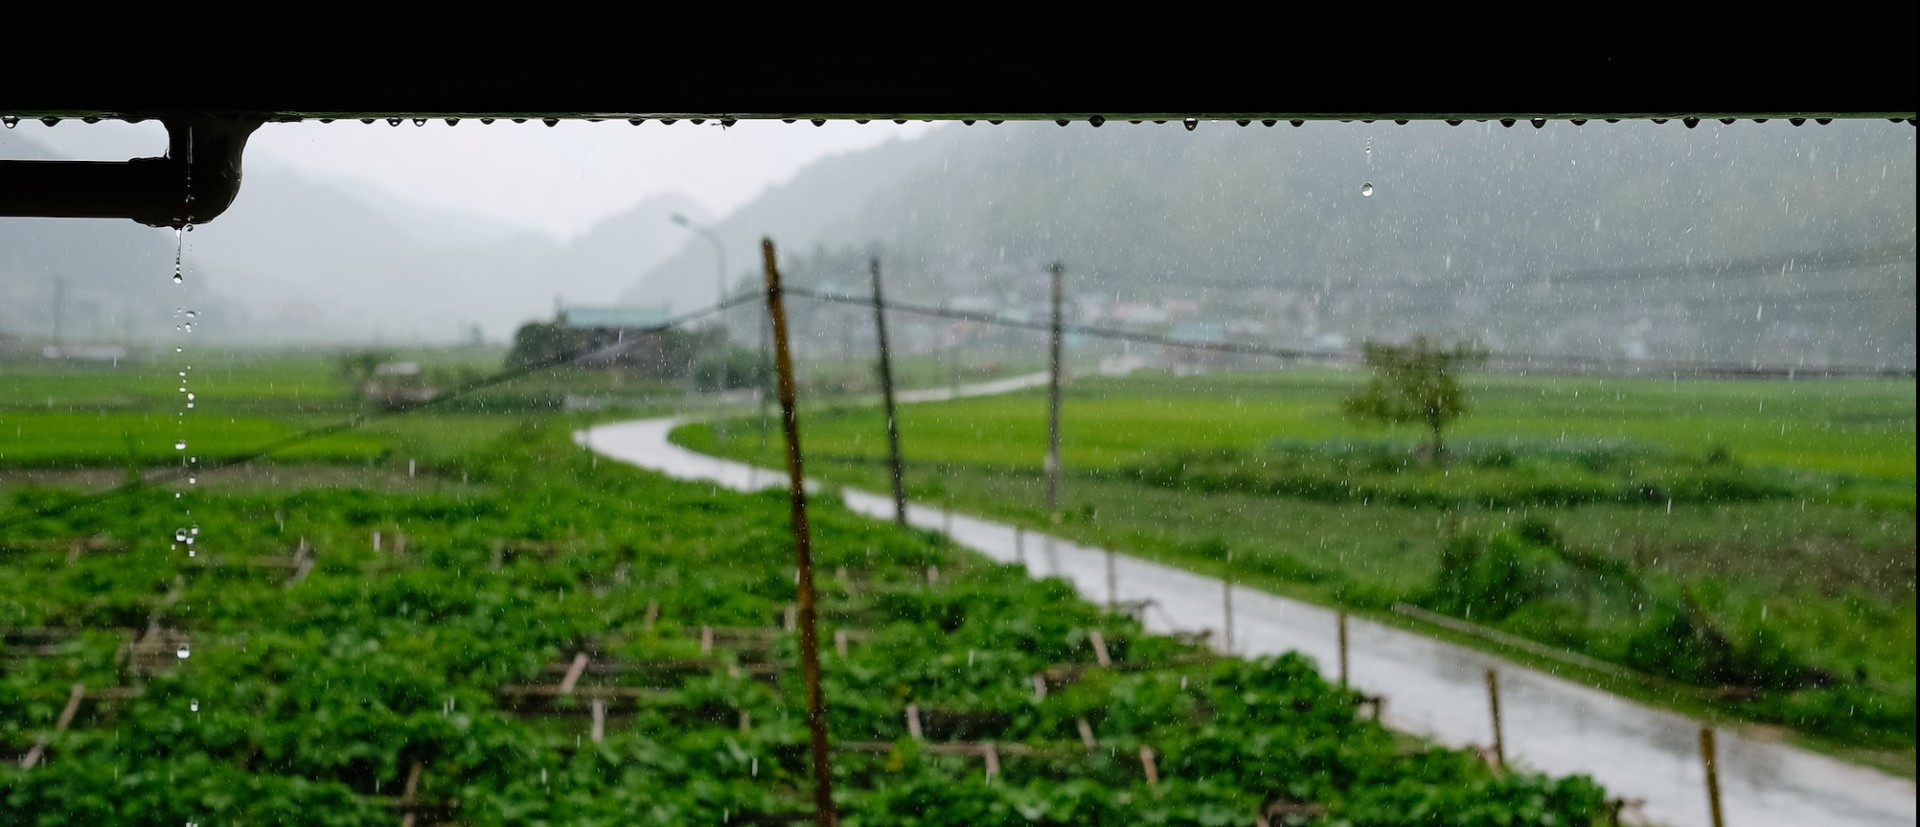 Rain falls on fields in Vietnam